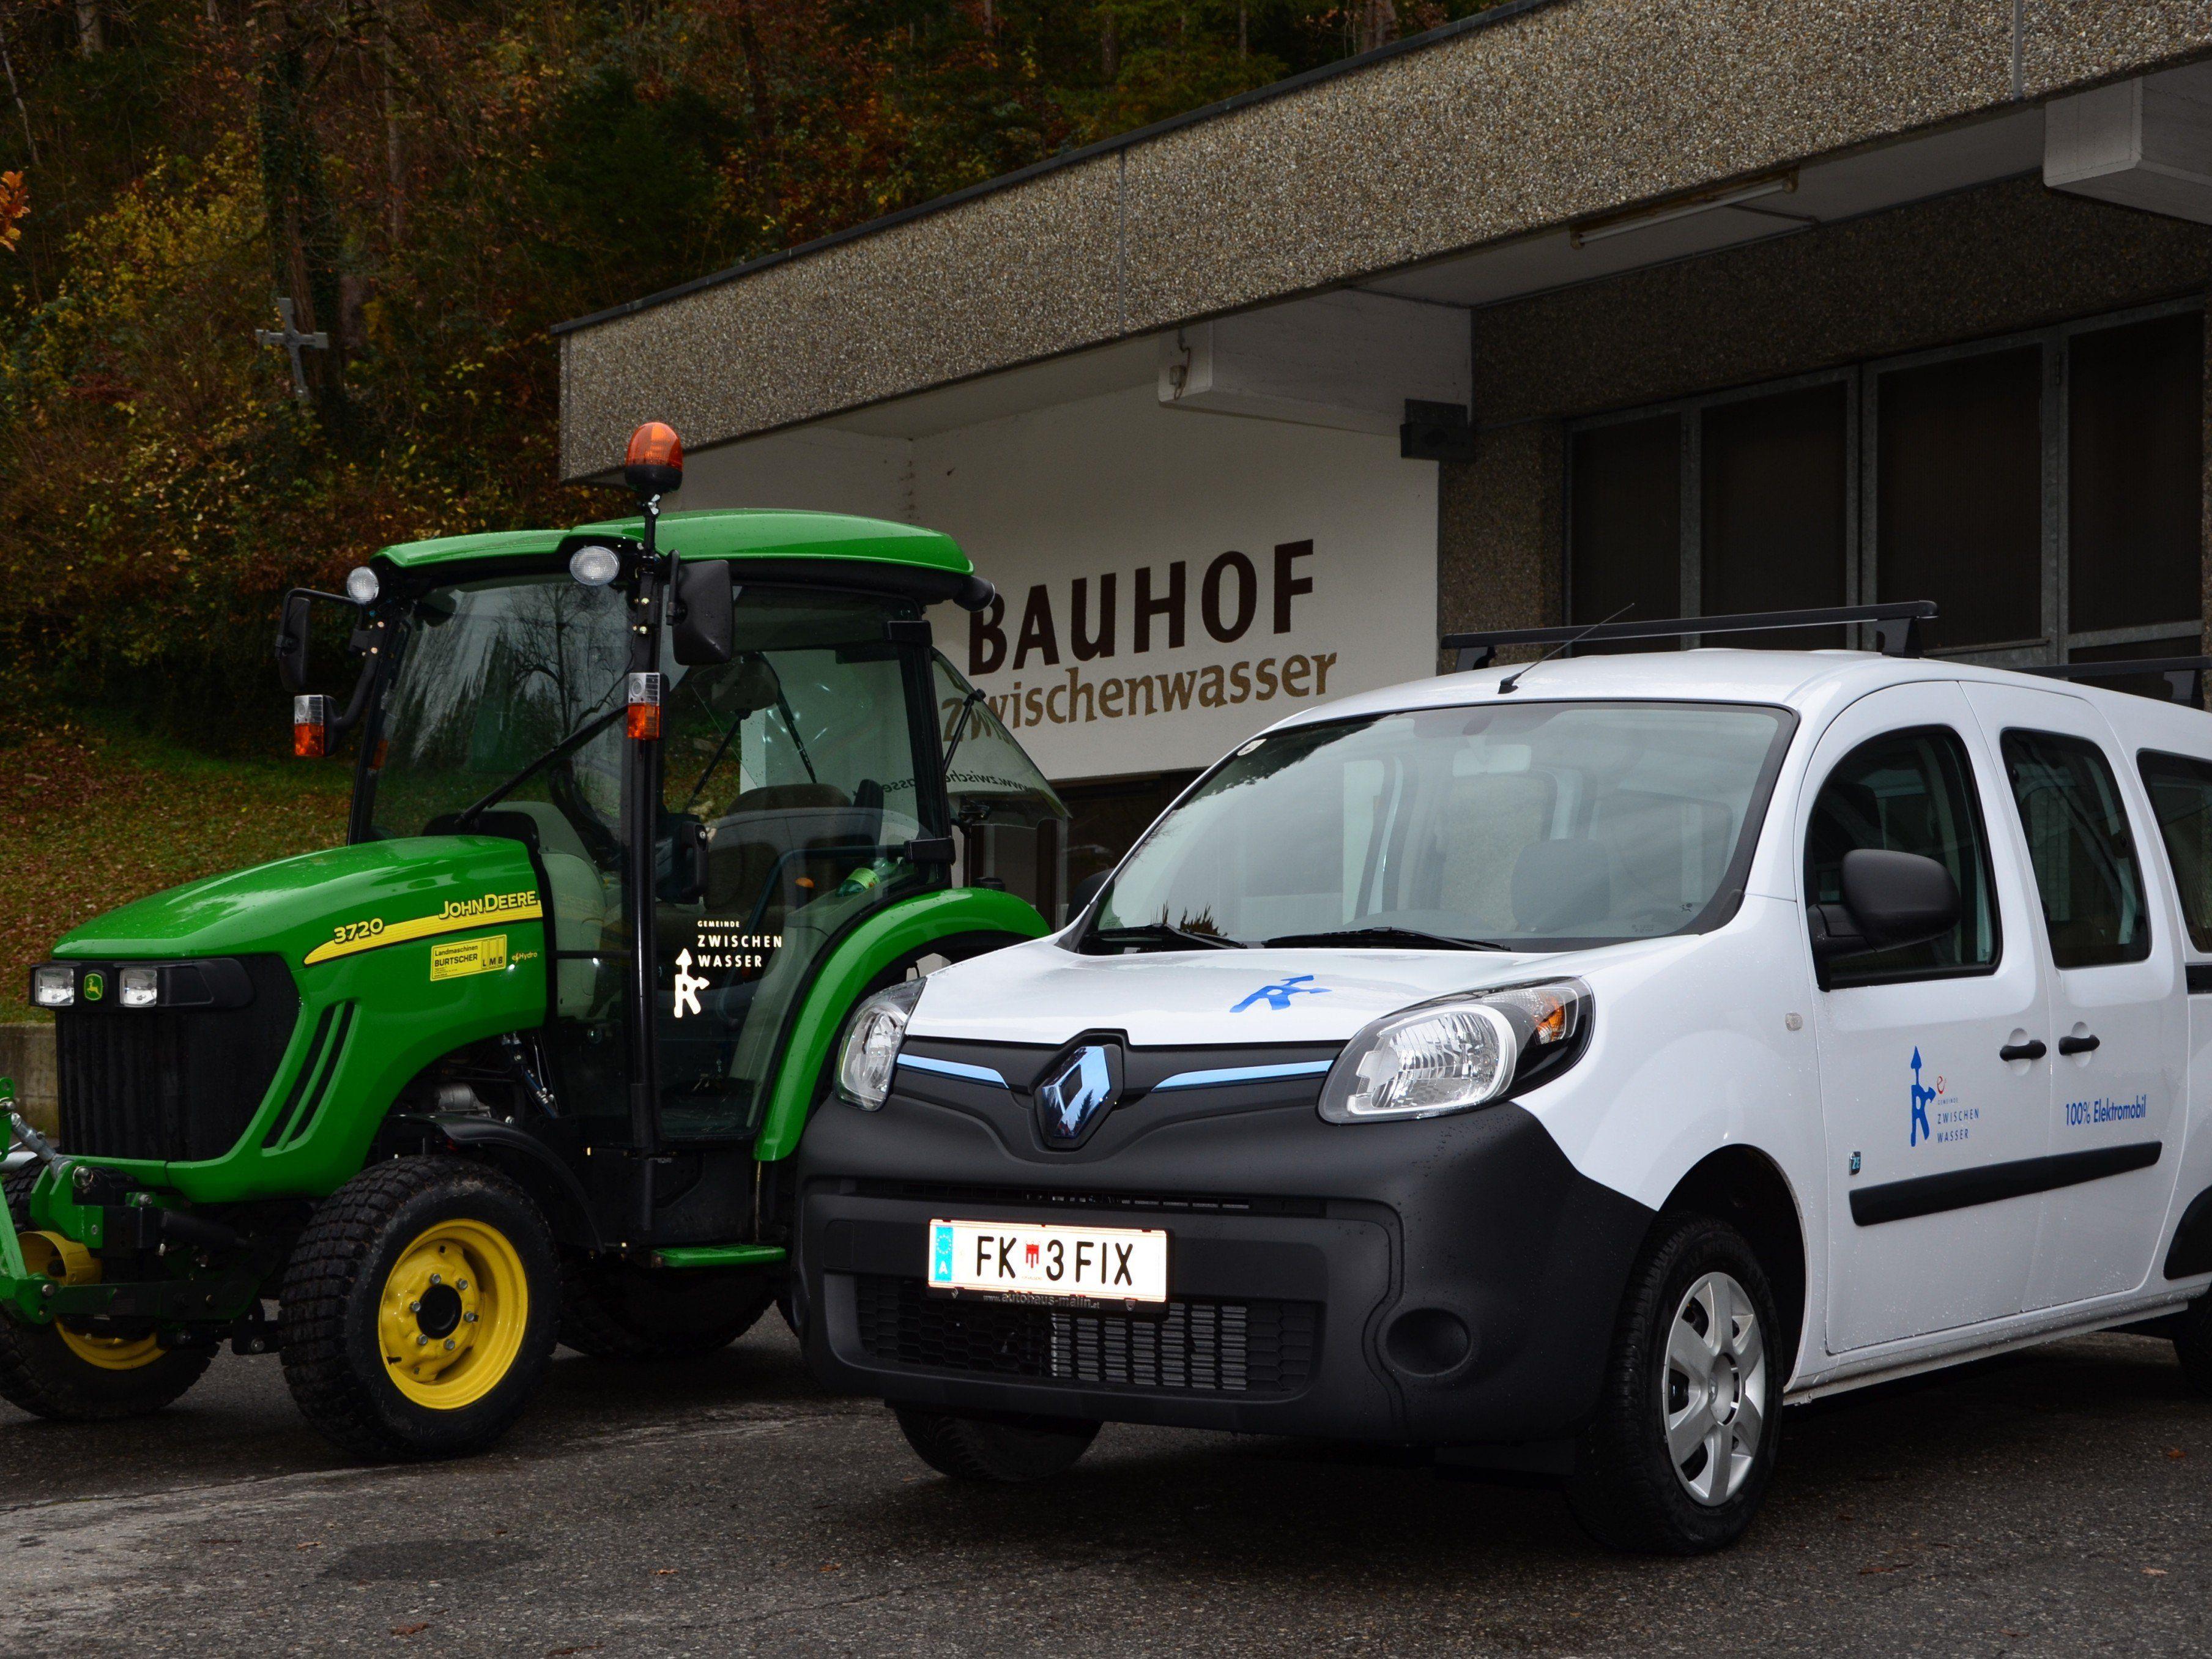 Die beiden neuen Fahrzeuge im Fuhrpark des Bauhof Zwischenwasser